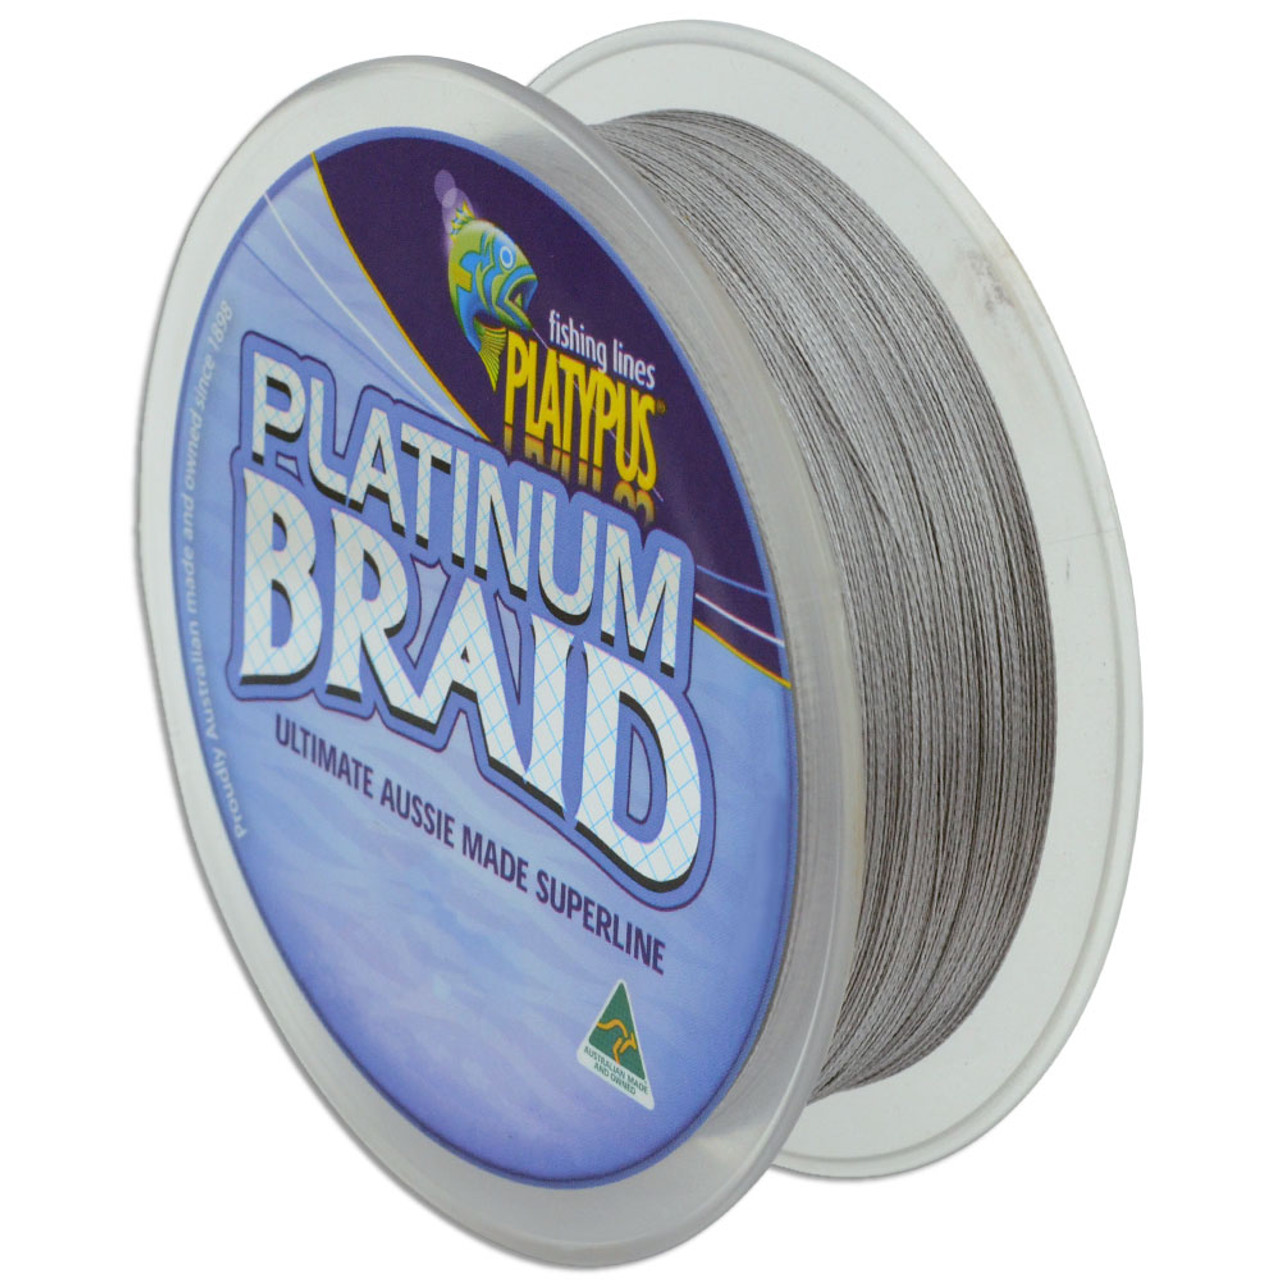 Platypus Platinum Braid